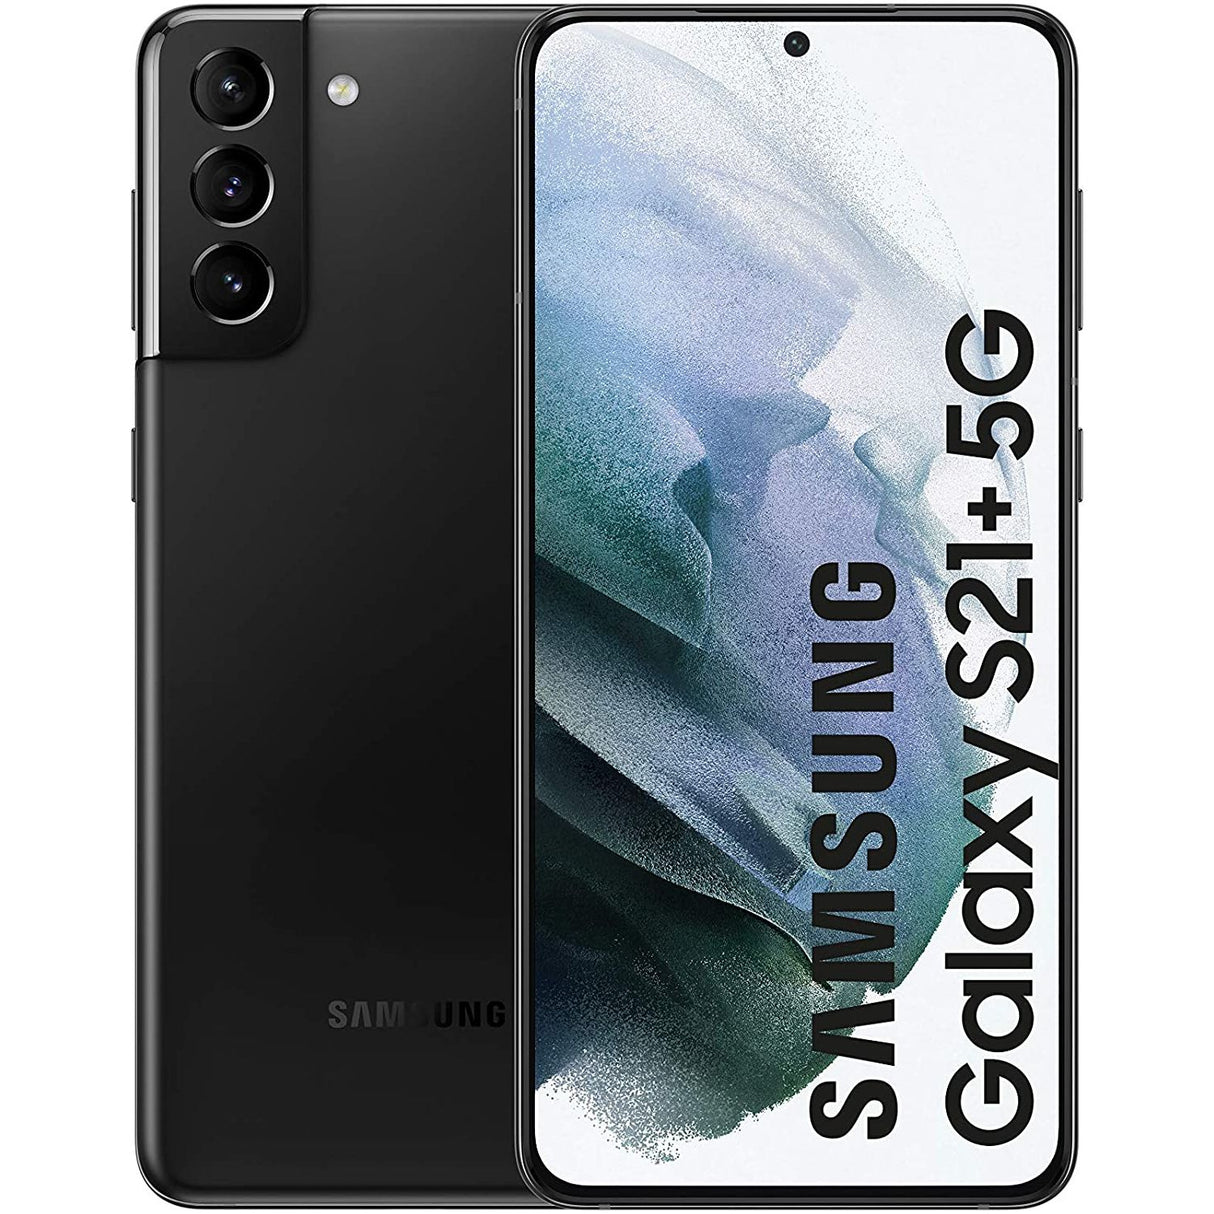 Samsung Galaxy S21+ 5G - 5G smartphone - dual-SIM - RAM 8 GB / I